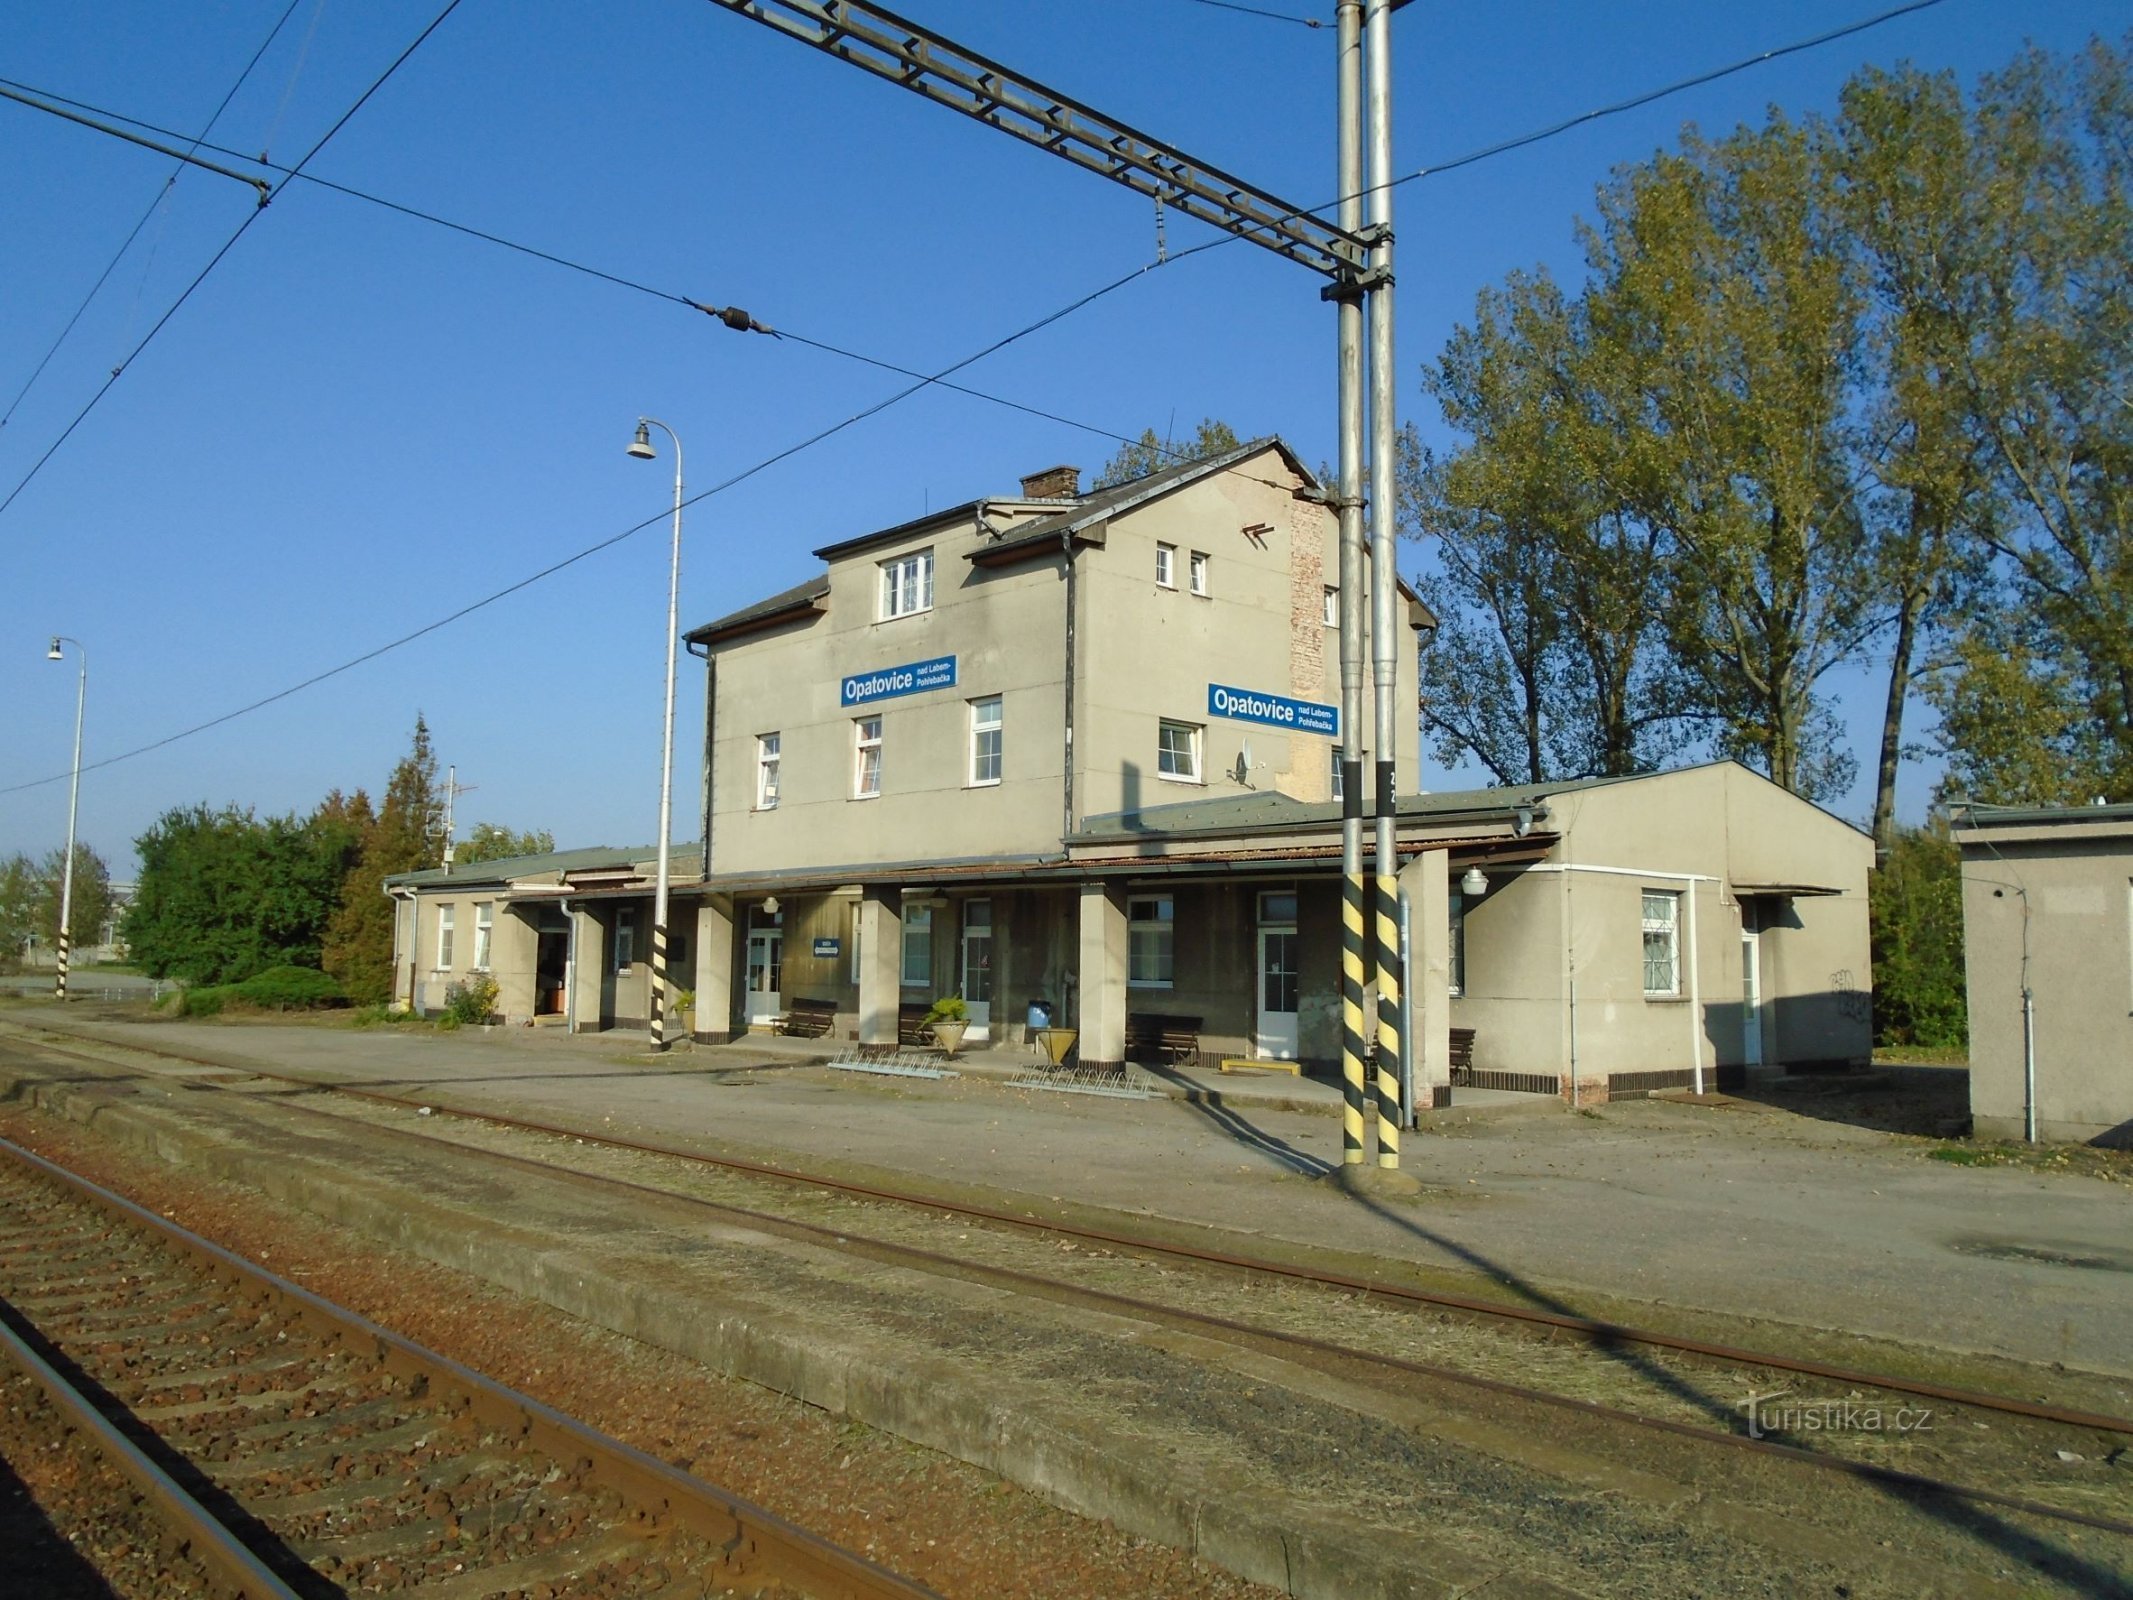 Ga xe lửa Opatovice nad Labem-Pohřebačka (ngày 30.9.2017 tháng XNUMX năm XNUMX)